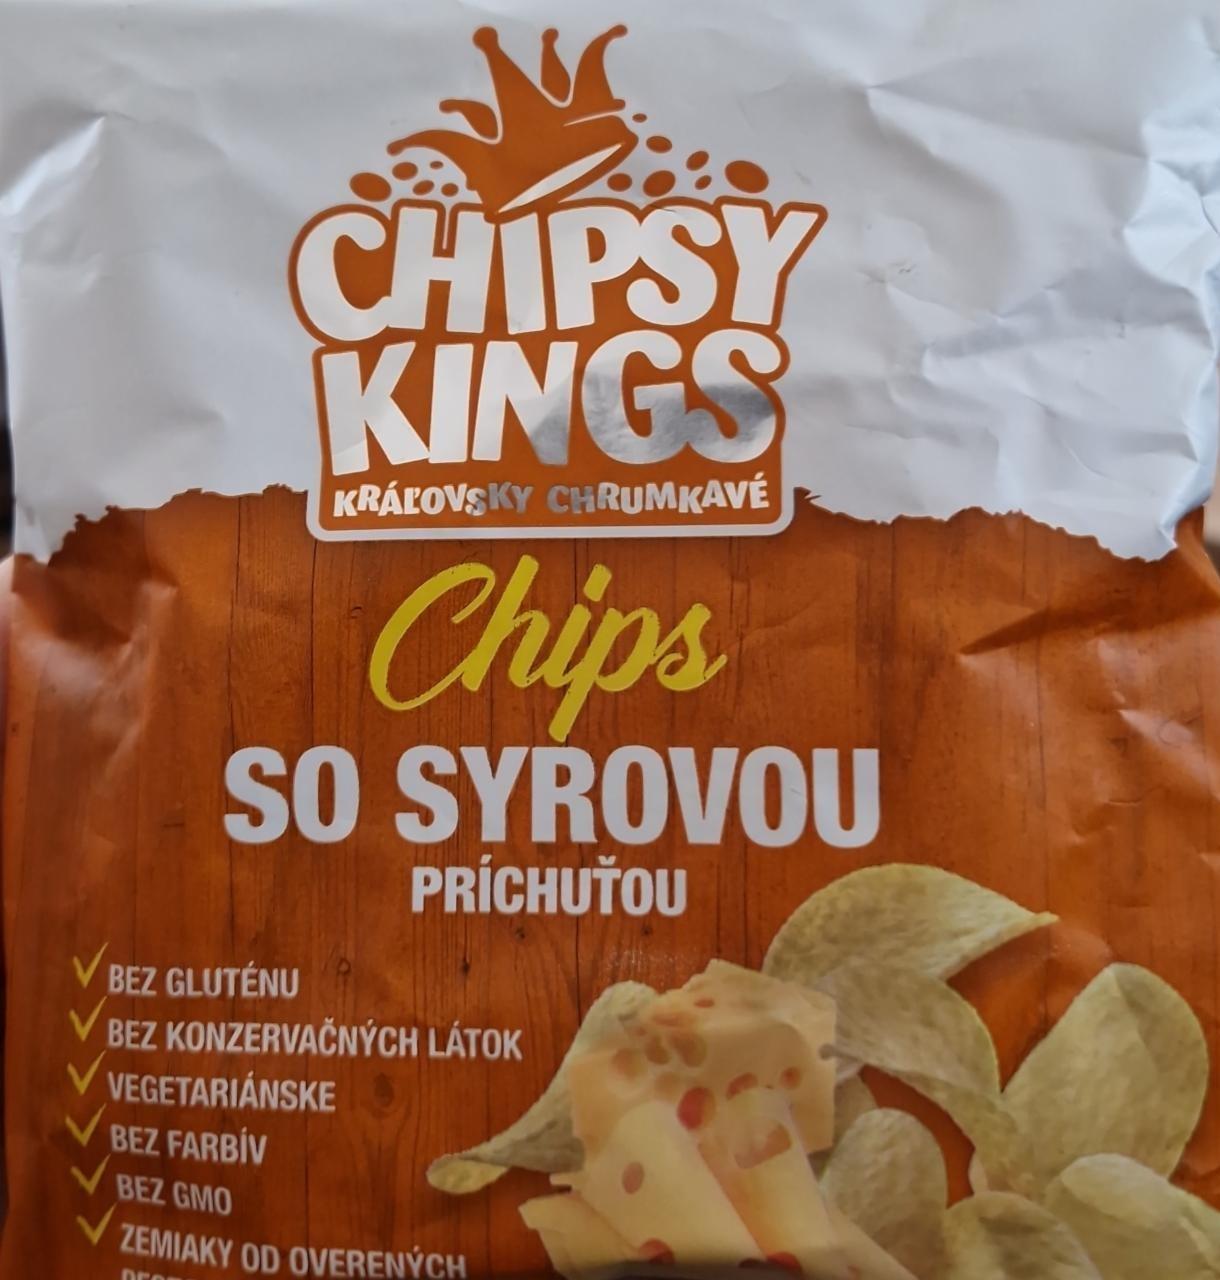 Fotografie - Chips so syrovou príchuťou Chipsy Kings